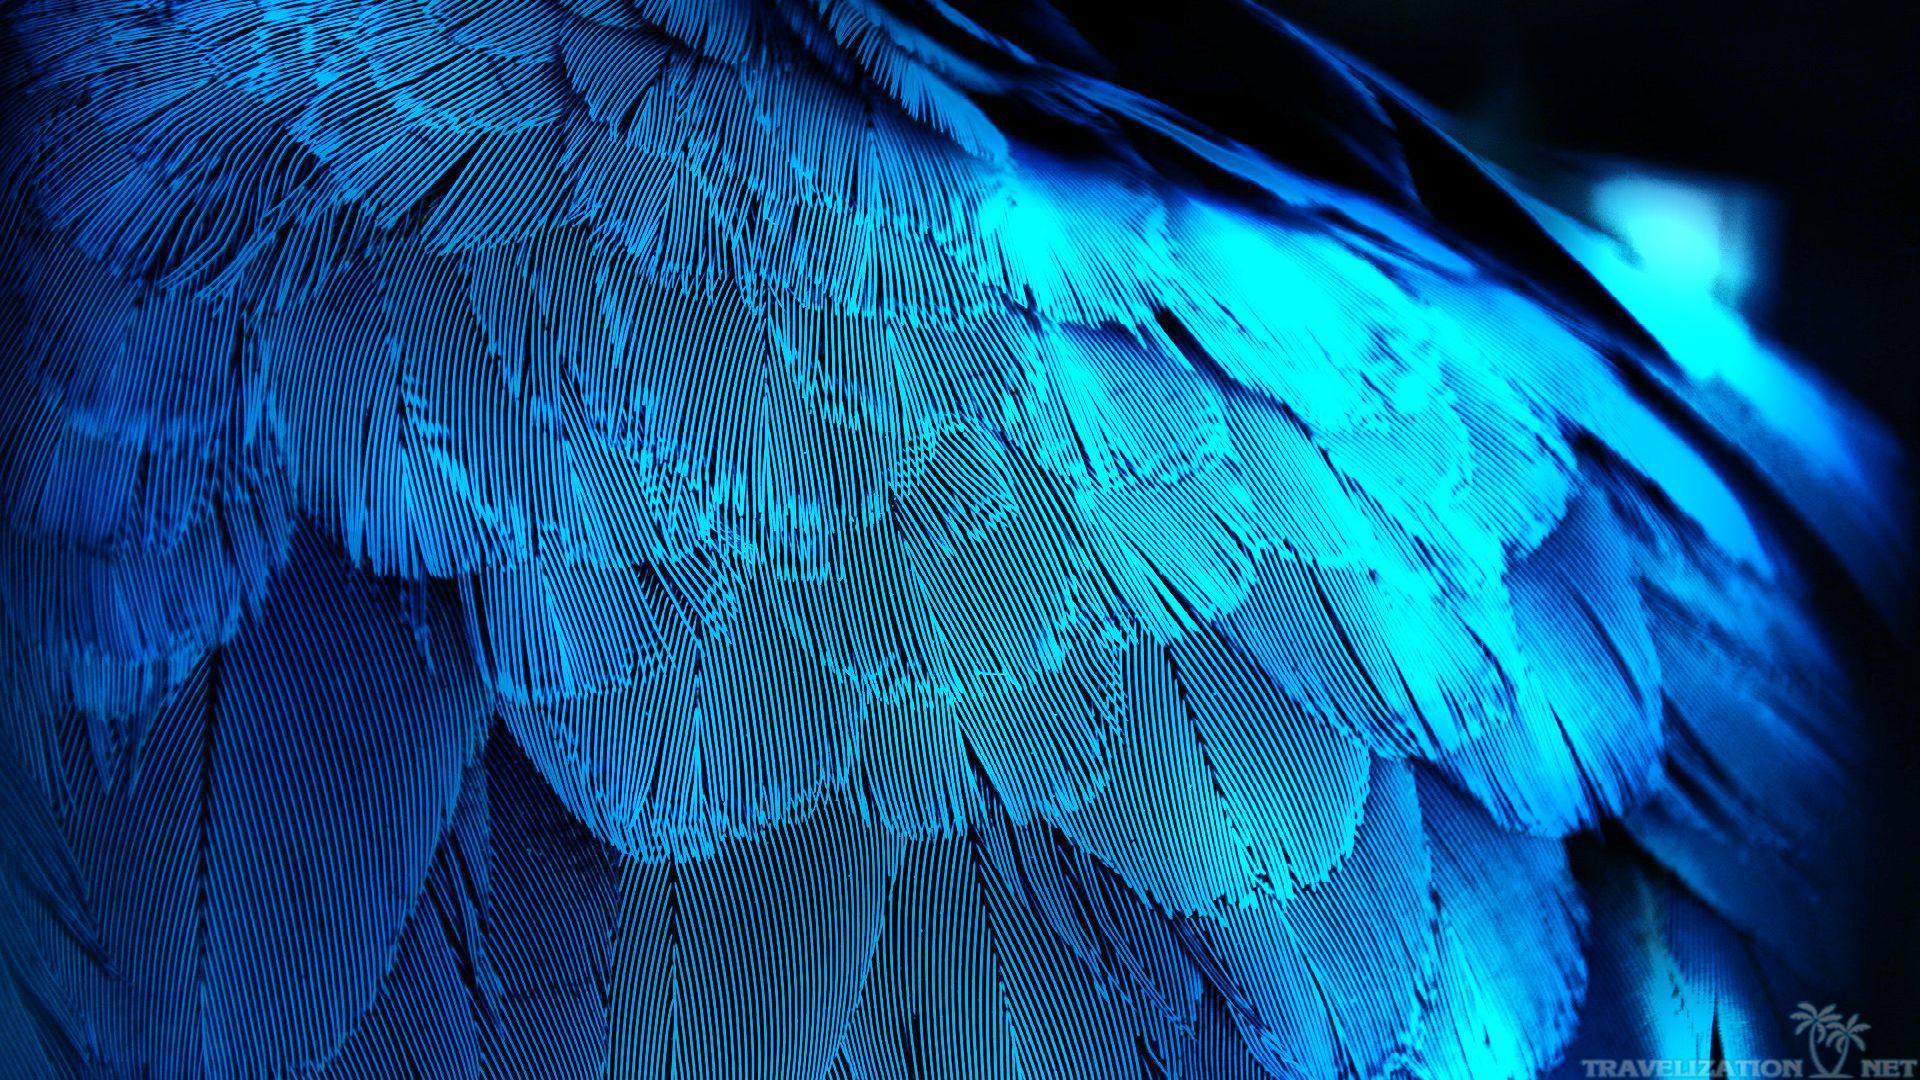 Blue Bird Feathers Wallpaper Jpg